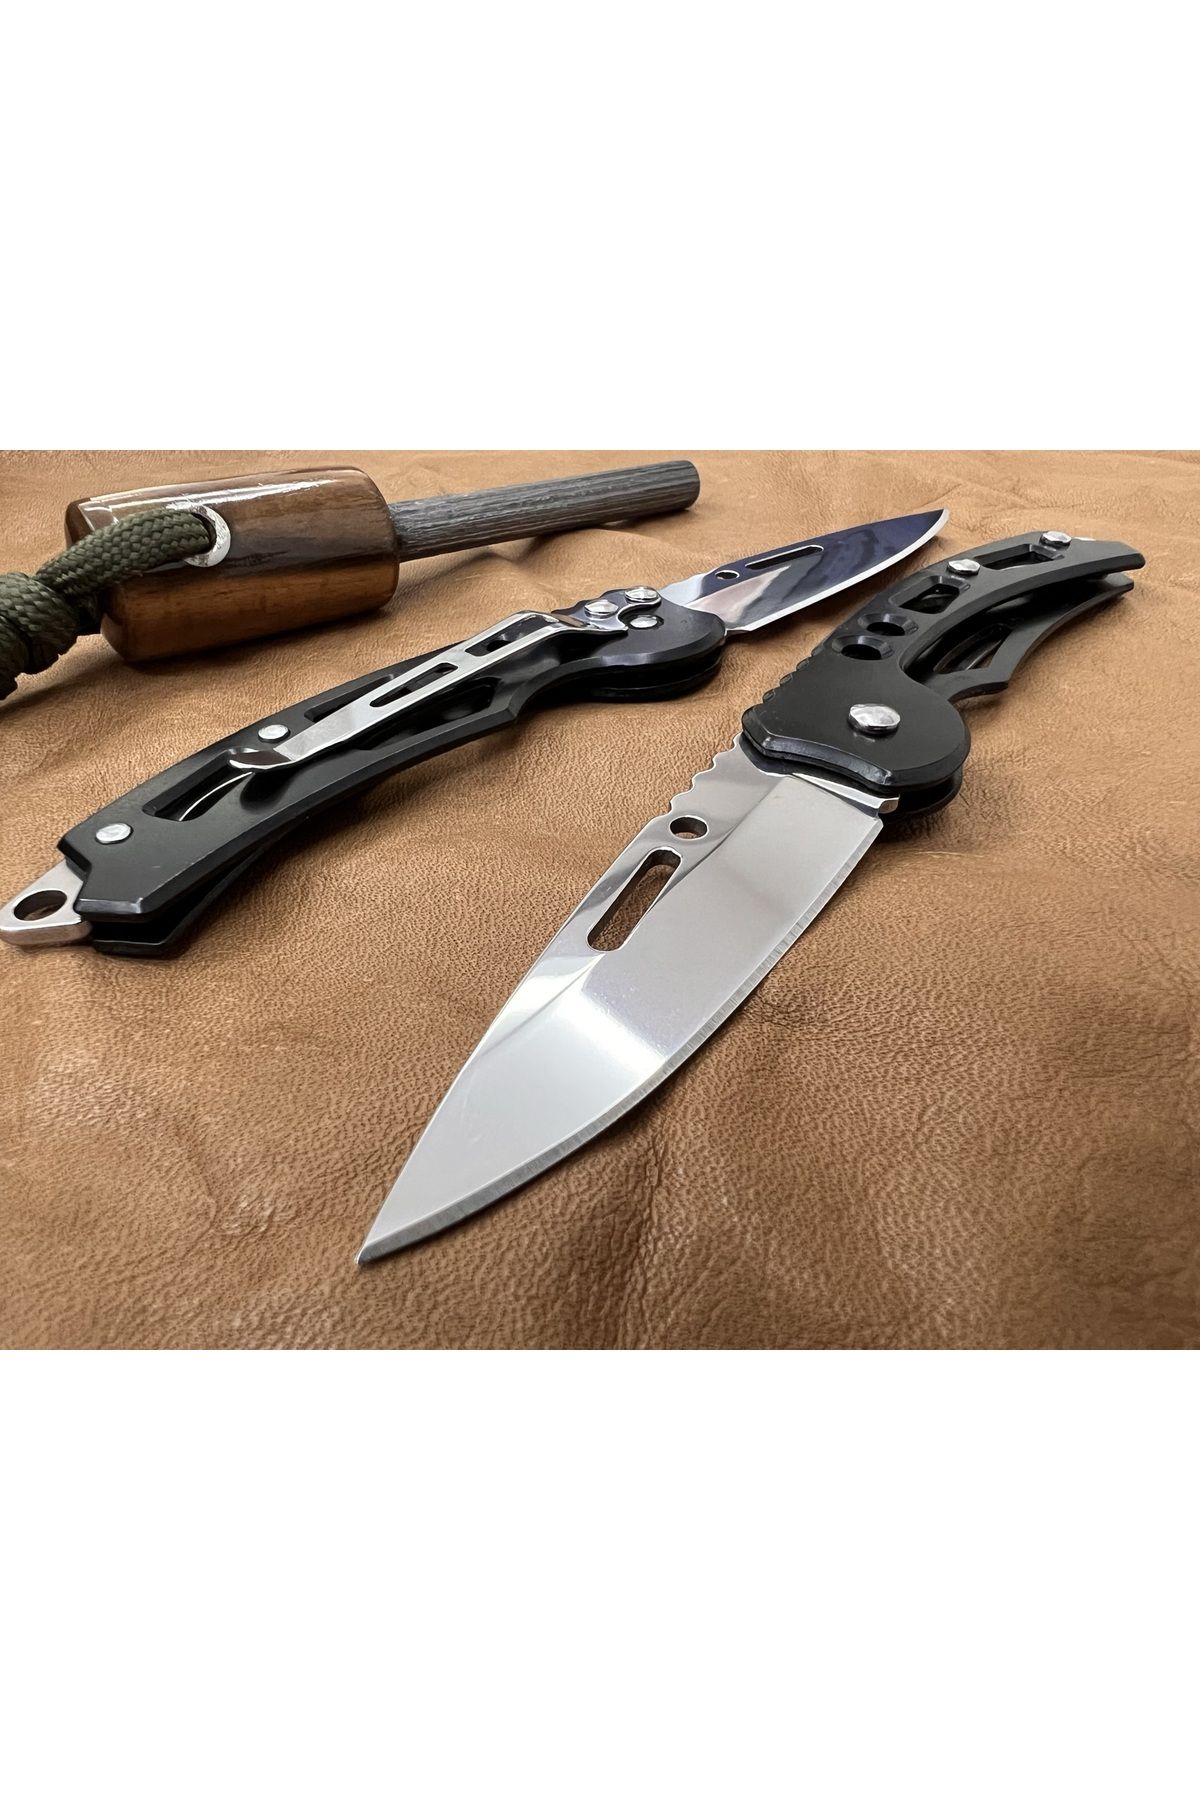 Şıktek Cep Çakısı Mini Bıçak Katlanır Kemer Askılı Taktik Izci Bıçağı Kampçı Çakıcı Asker Cep Bıçağı 1 Adet